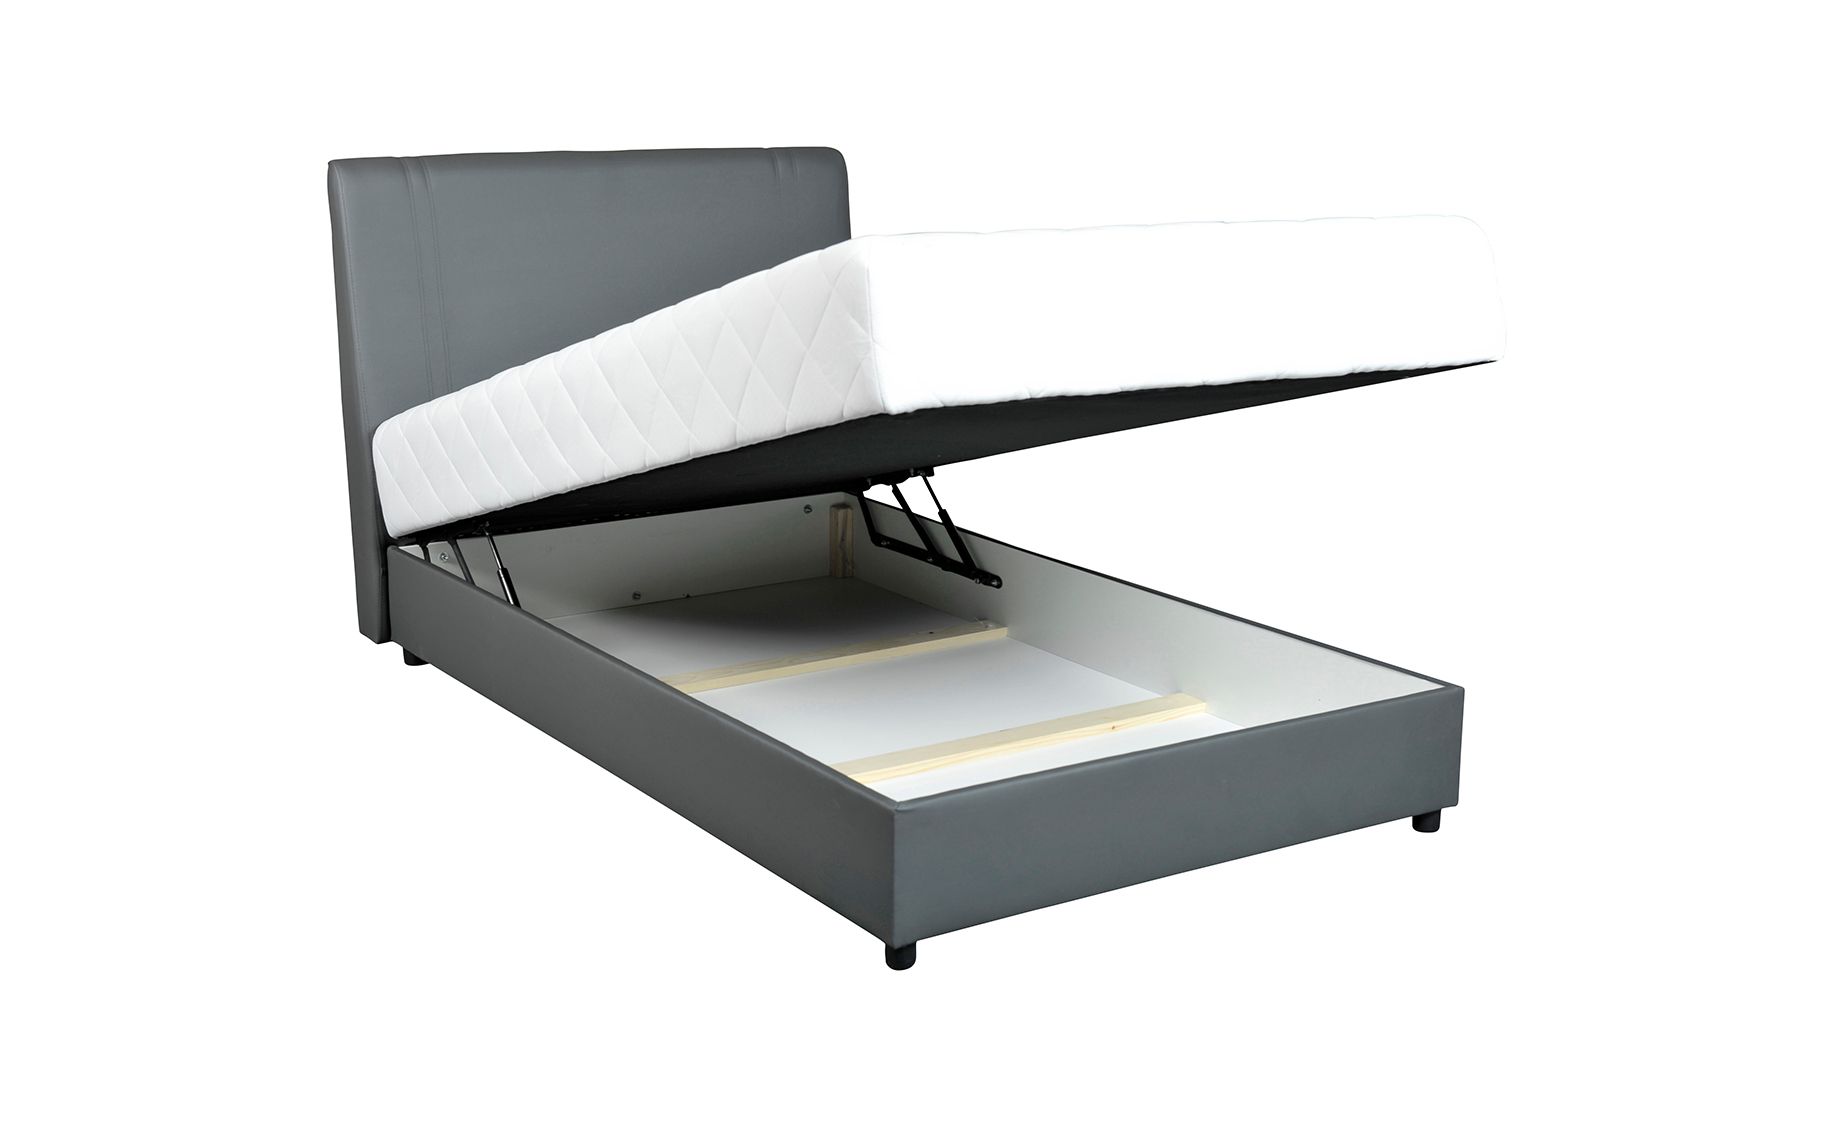 Boem 2 francuski krevet sa spremnikom 120x215x115cm